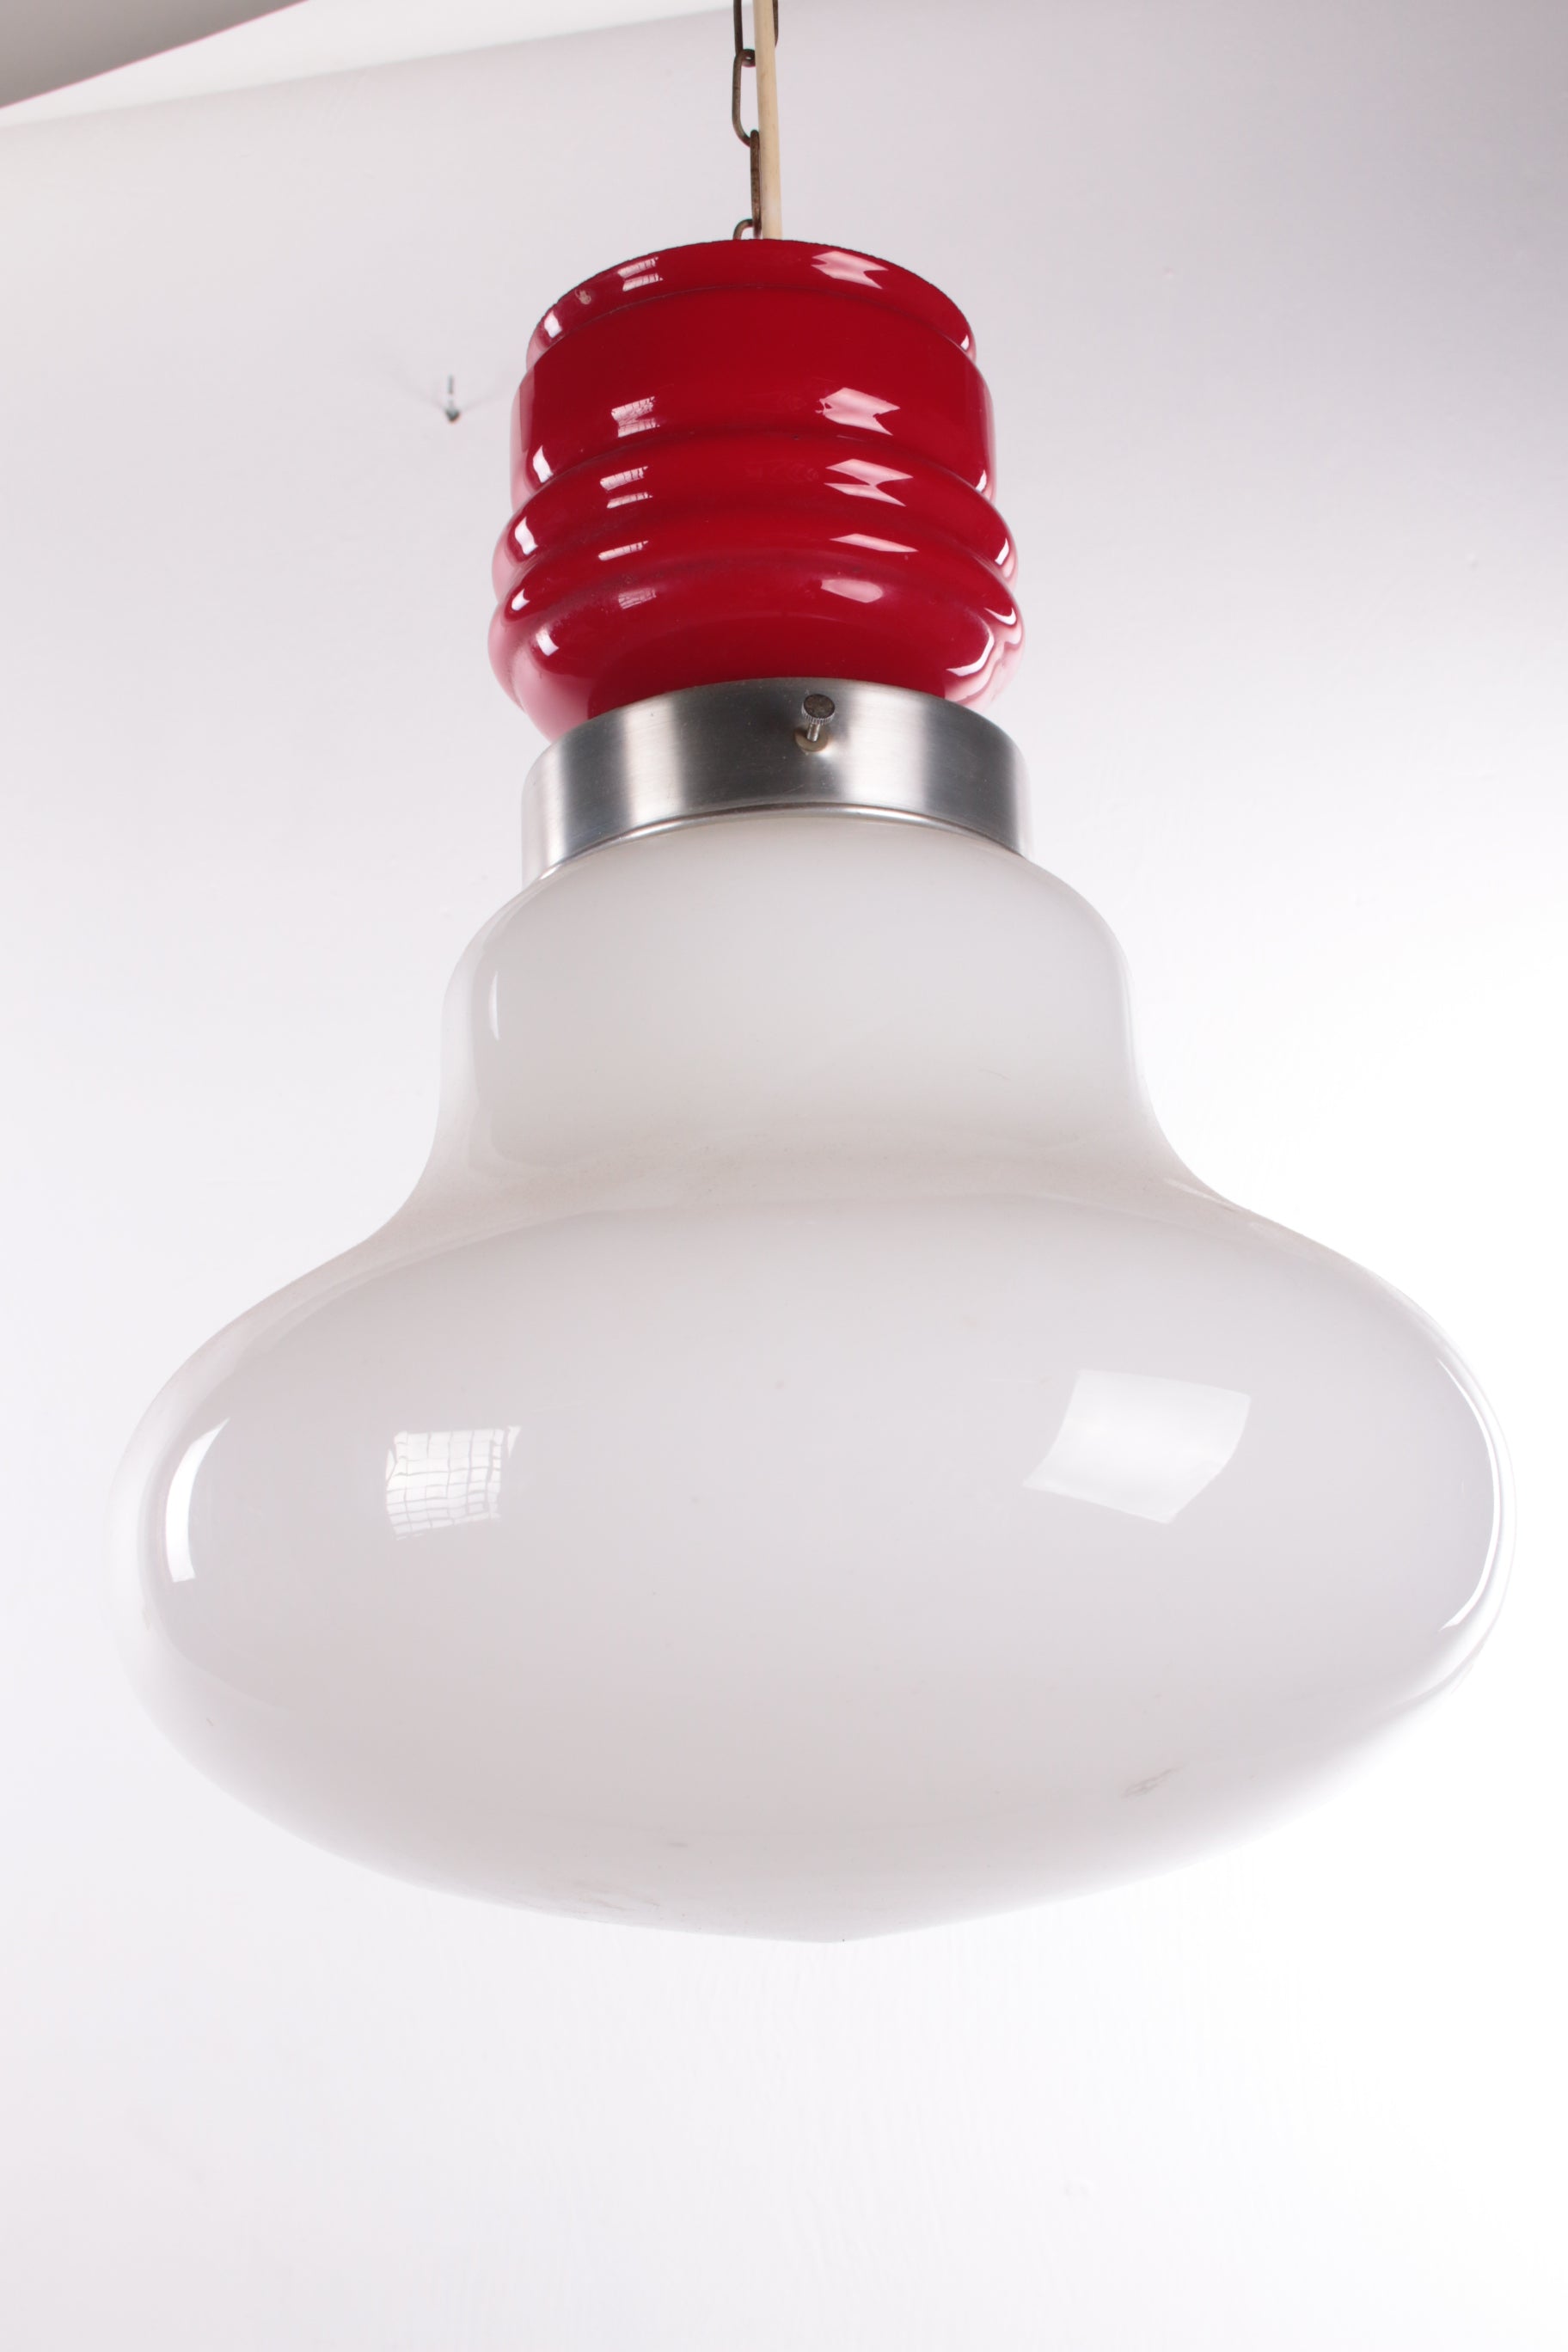 Vintage Hanglamp rood met wit melkglas jaren 60 voorkant